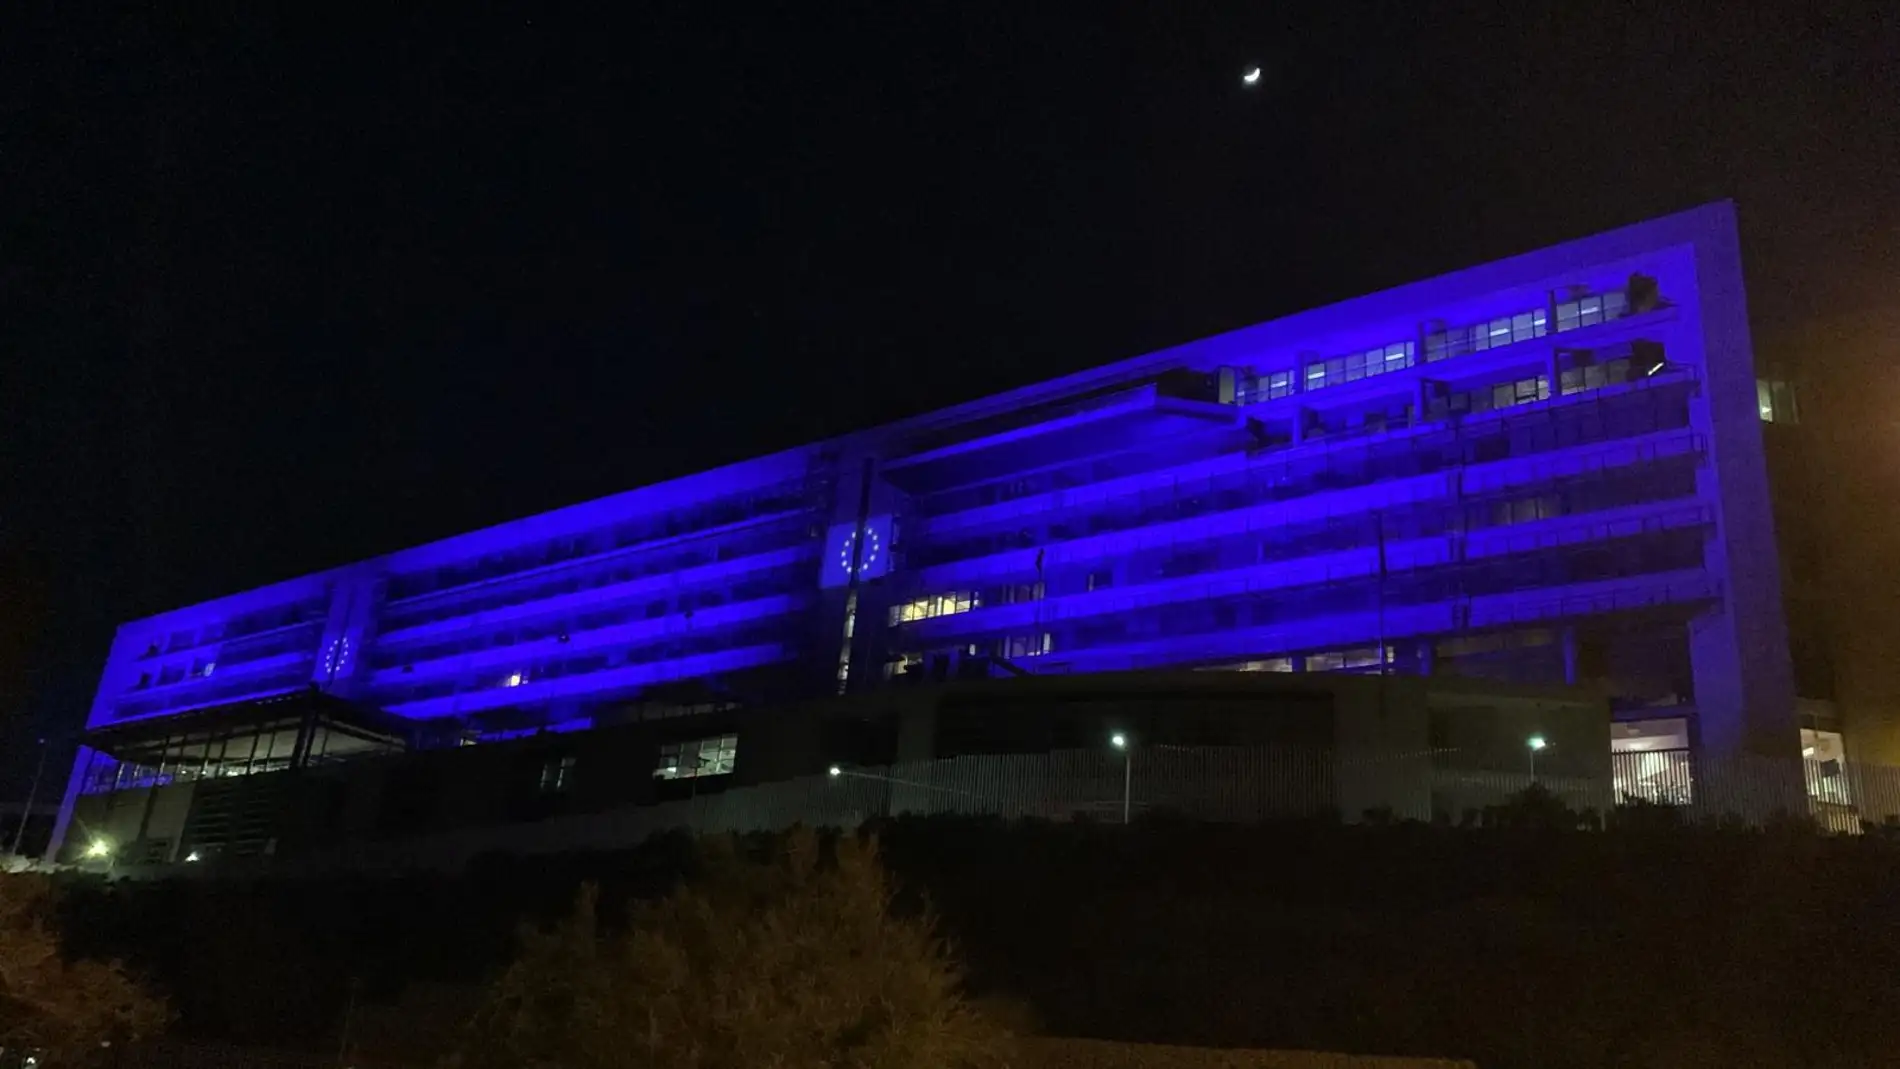 La sede de la EUIPO en Alicante iluminada con el azul de la Europa Unida